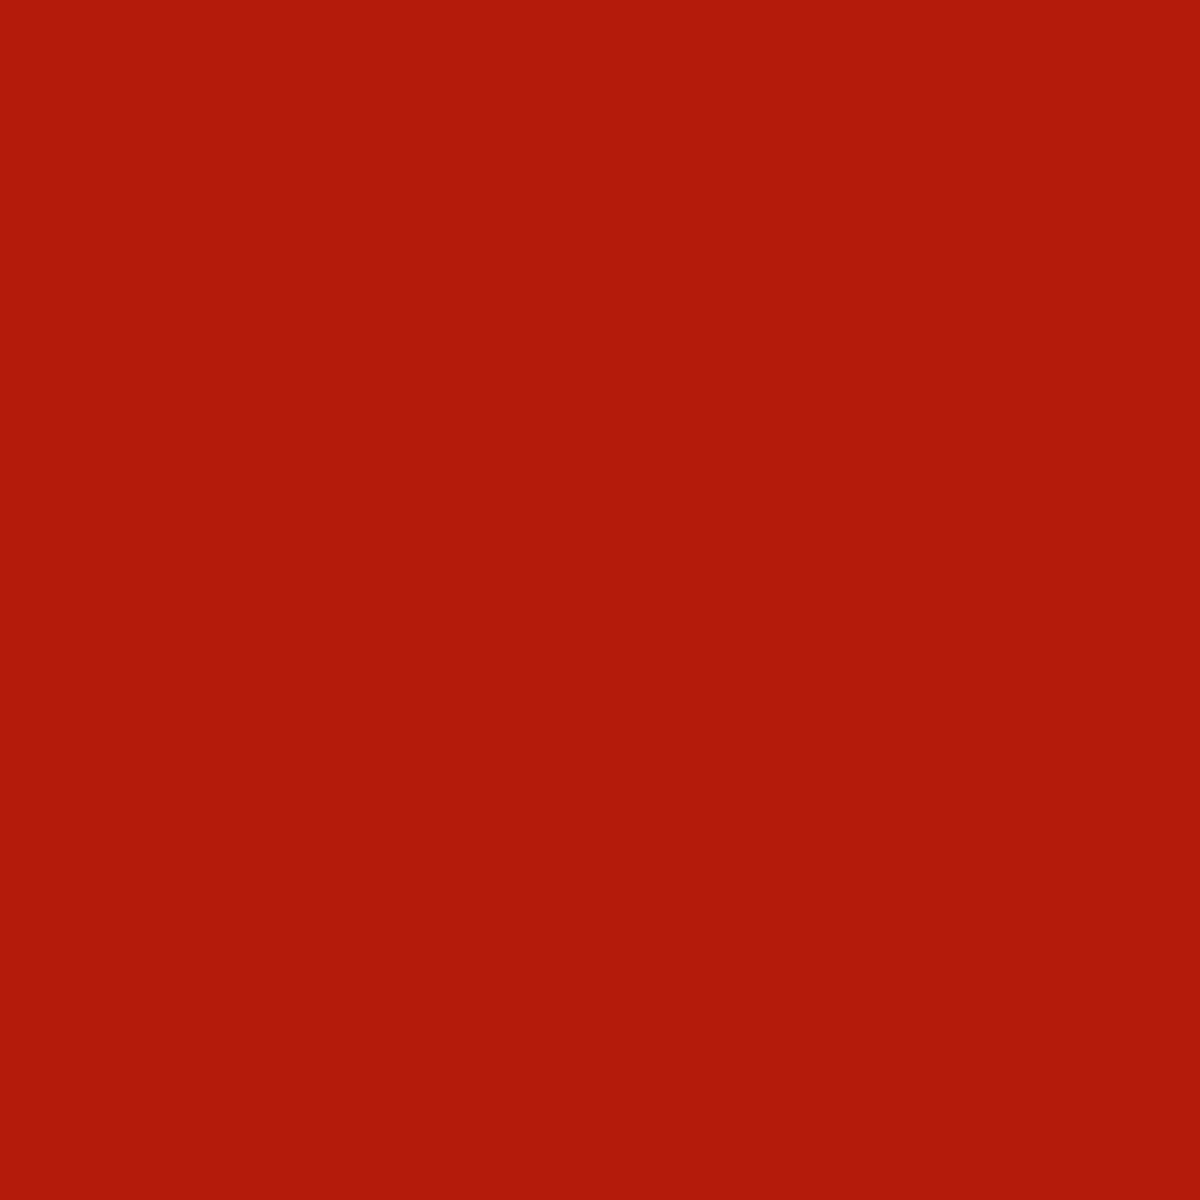 3M Scotchcal Pellicola colorata traslucida 3630-43 Rosso pomodoro chiaro 1,22 m x 45,7 m